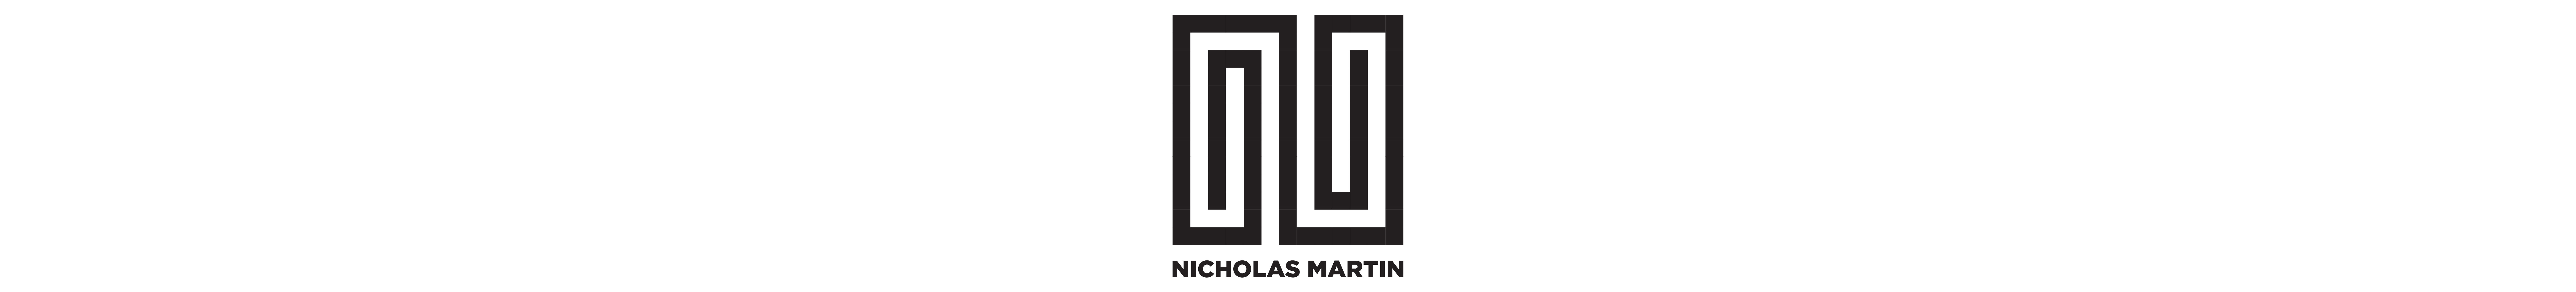 Nicholas Martin's profile banner